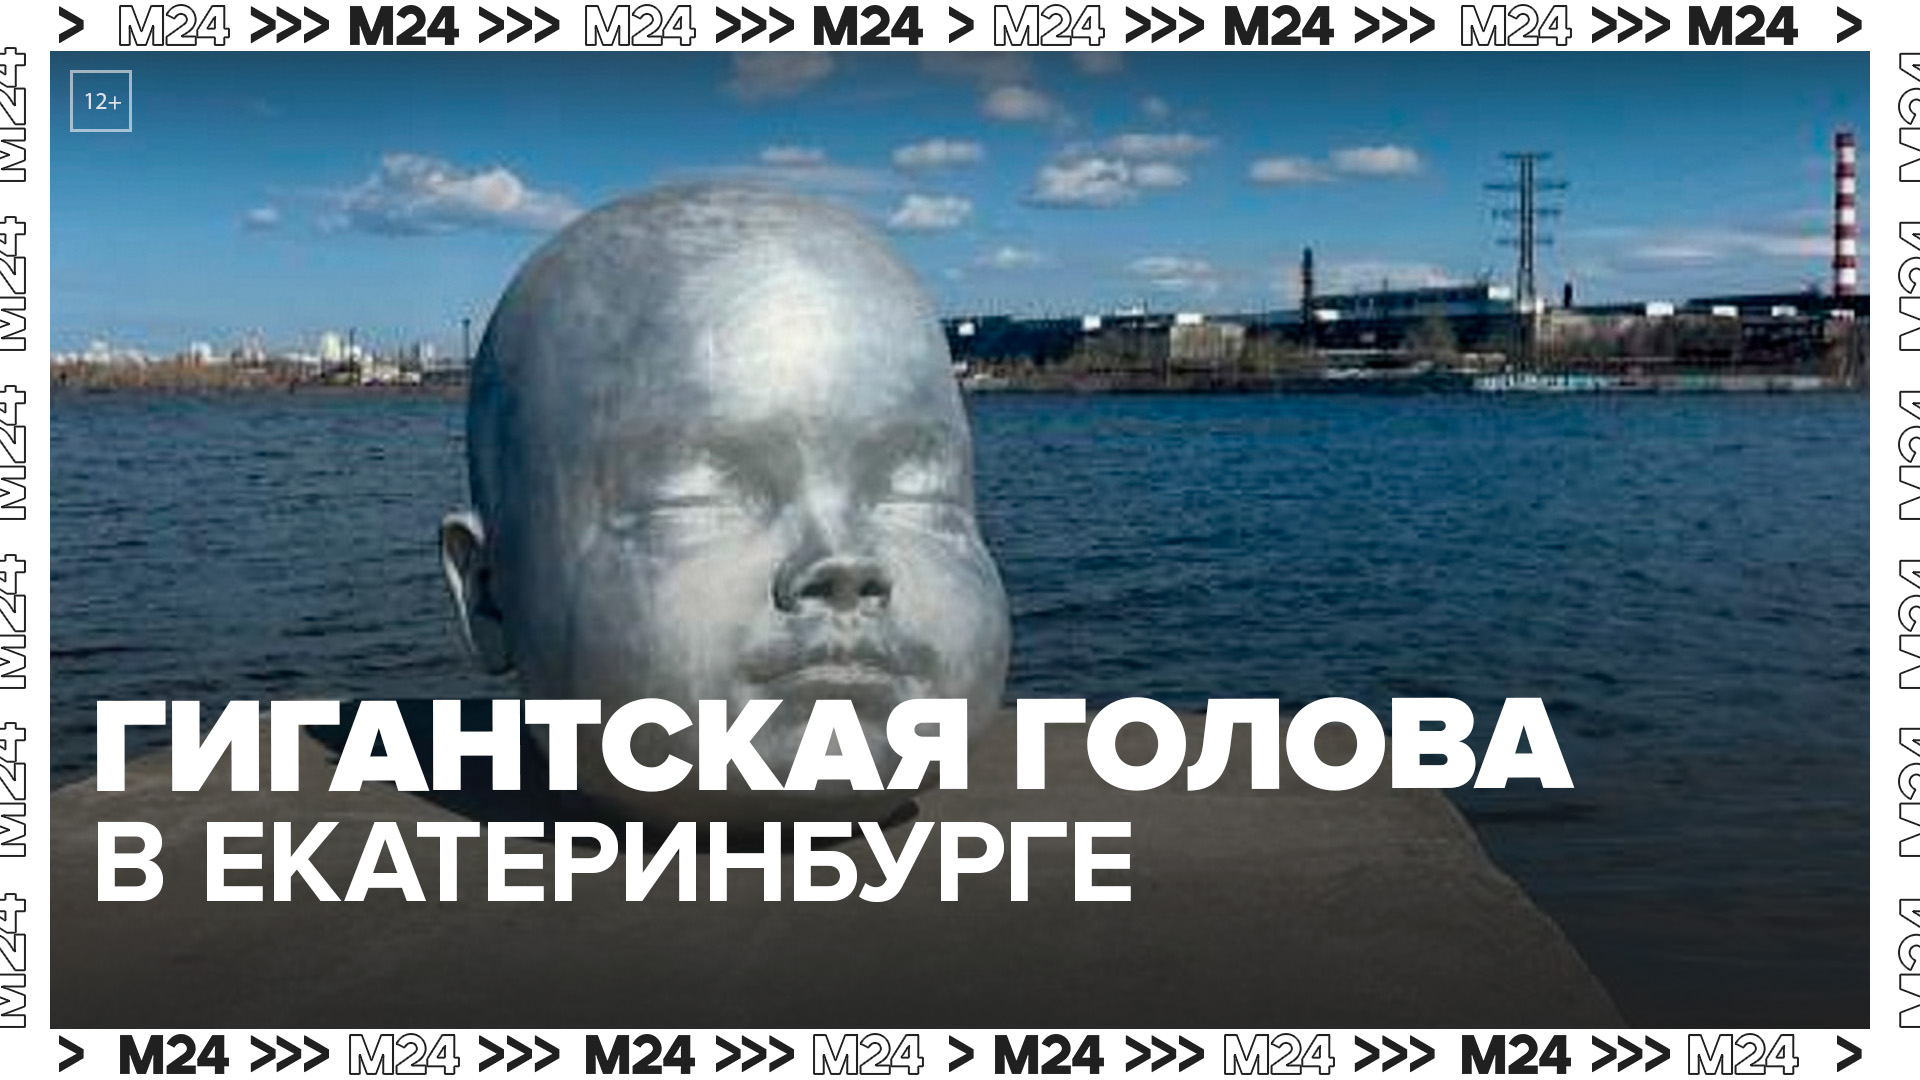 Арт-объект гигантской детской головы появился в Екатеринбурге - Москва 24